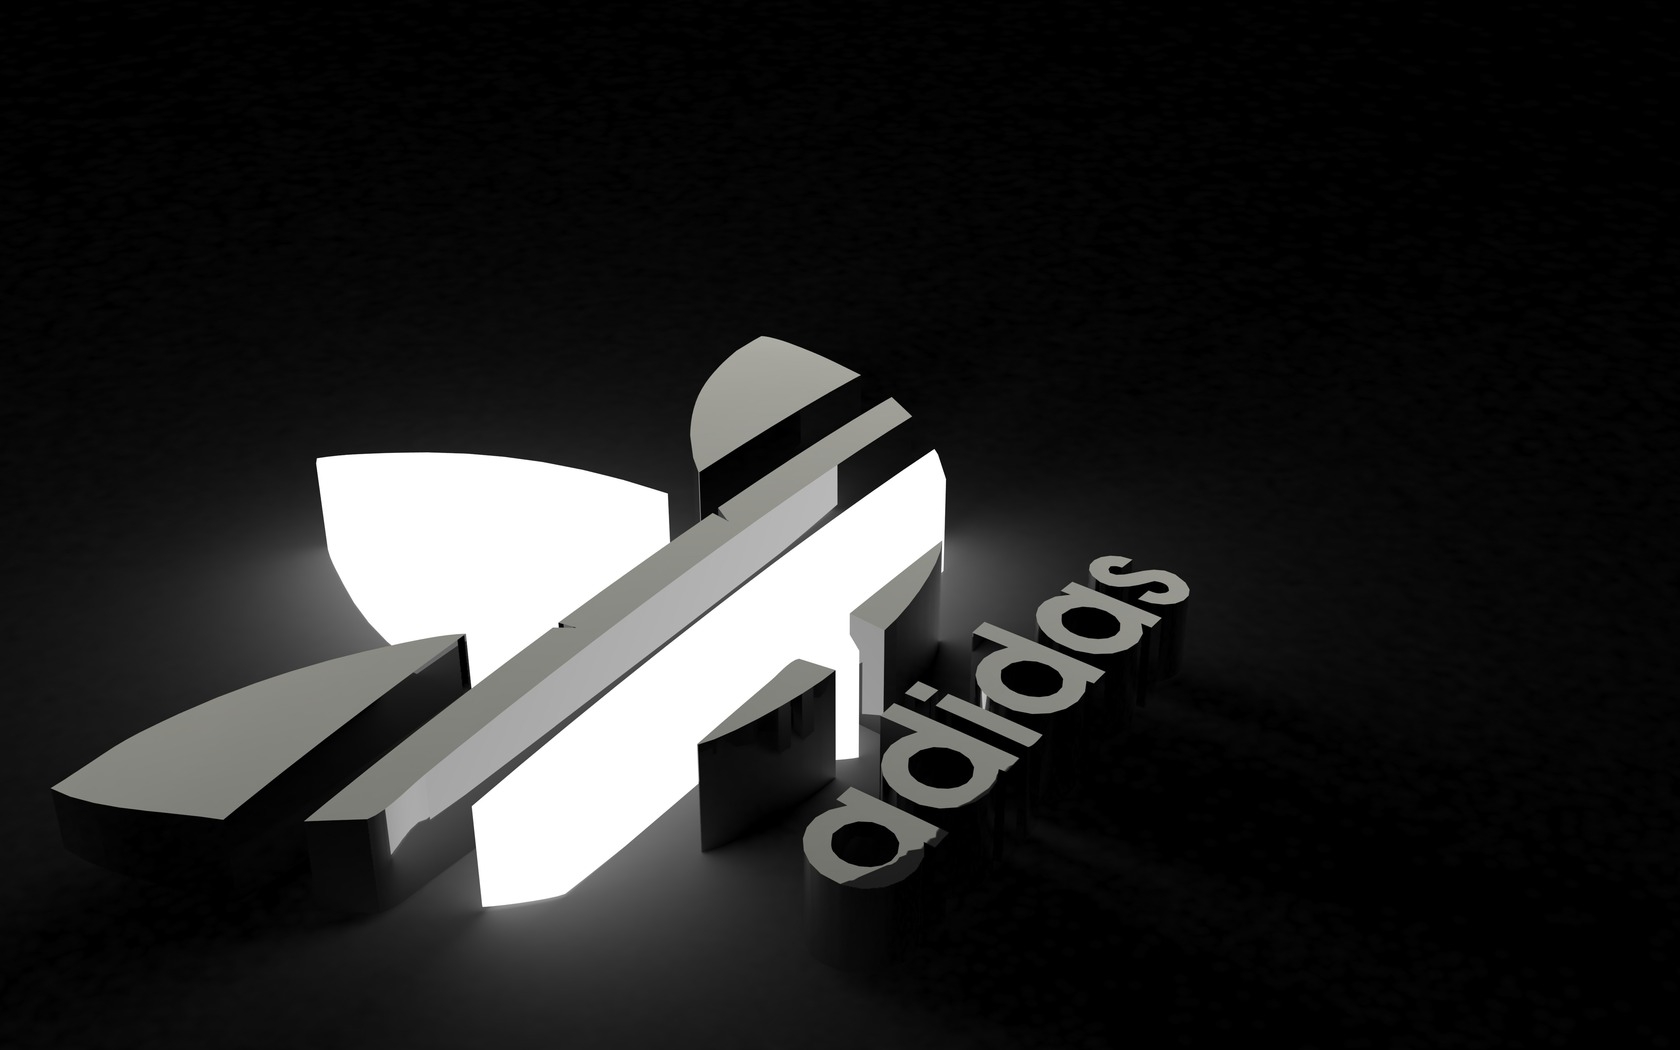 adidas logo 4k wallpaper